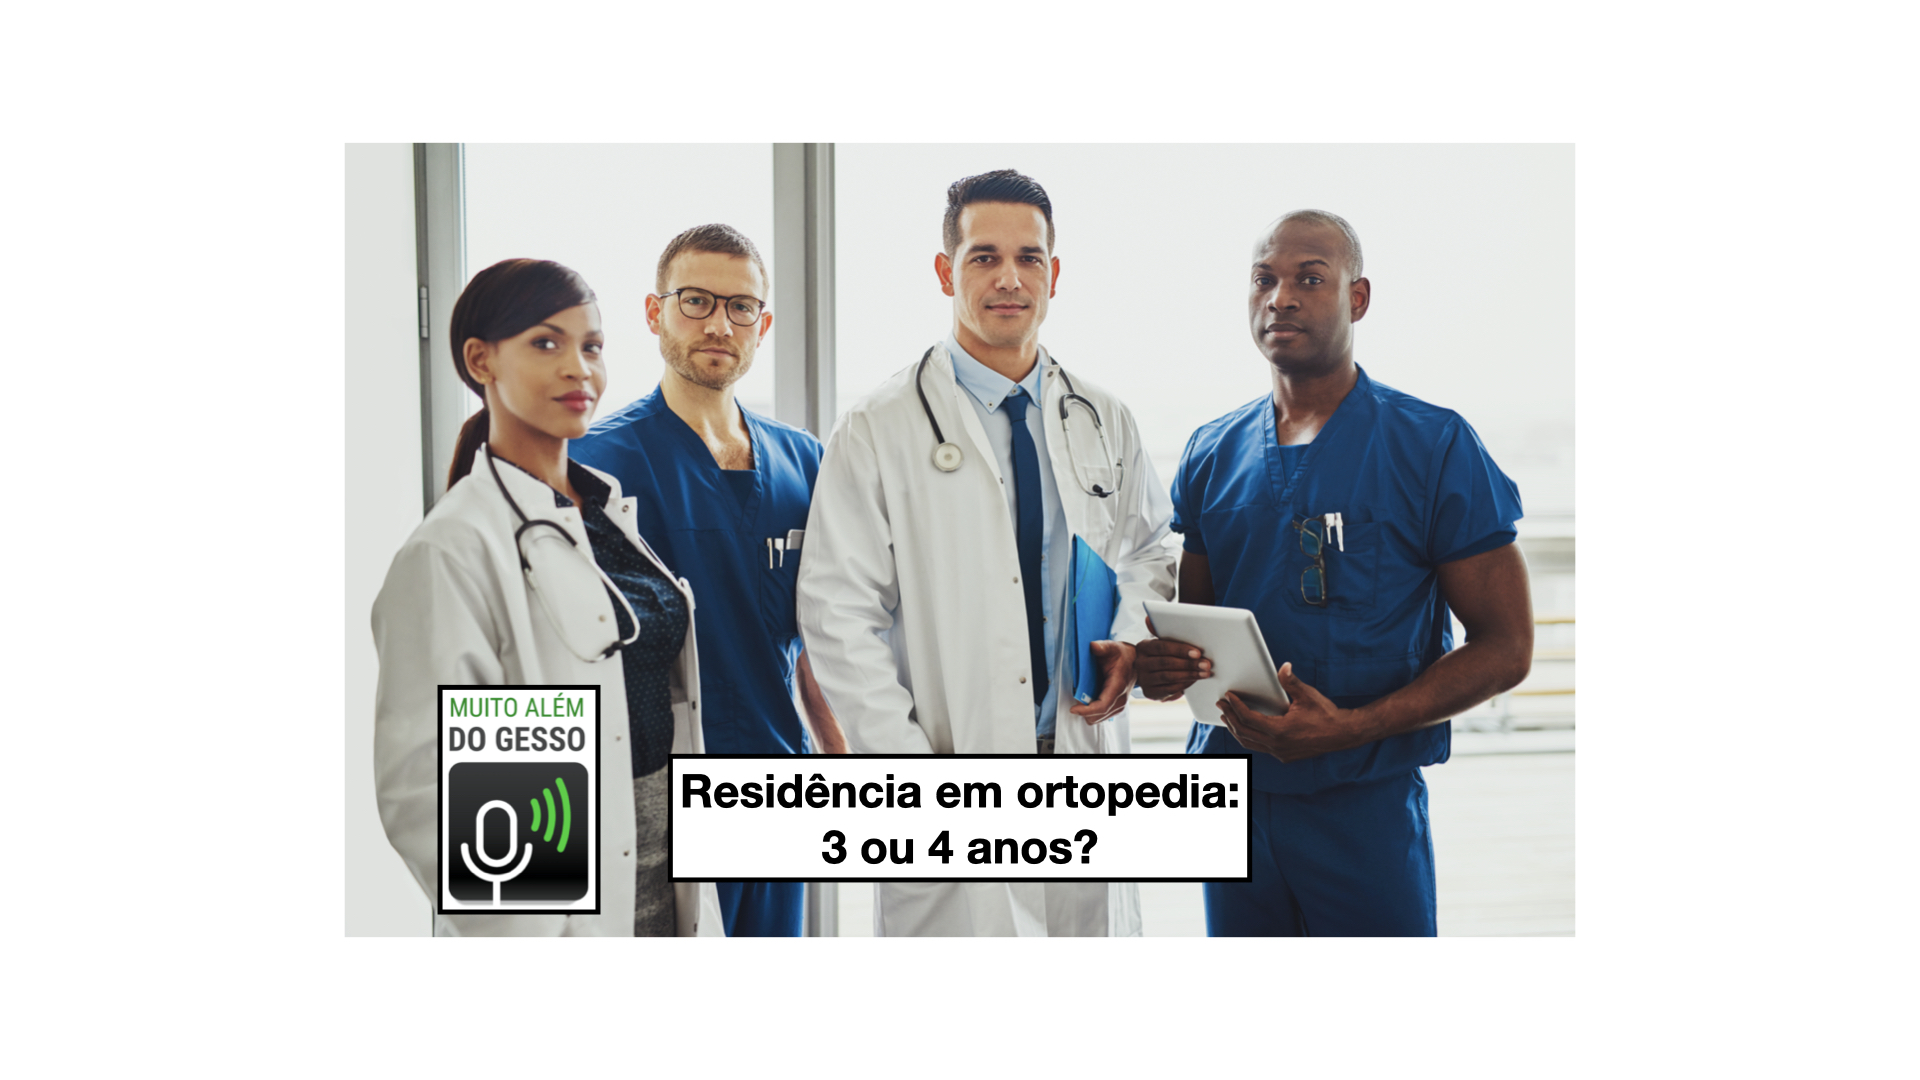 Residencia medica ortopedia